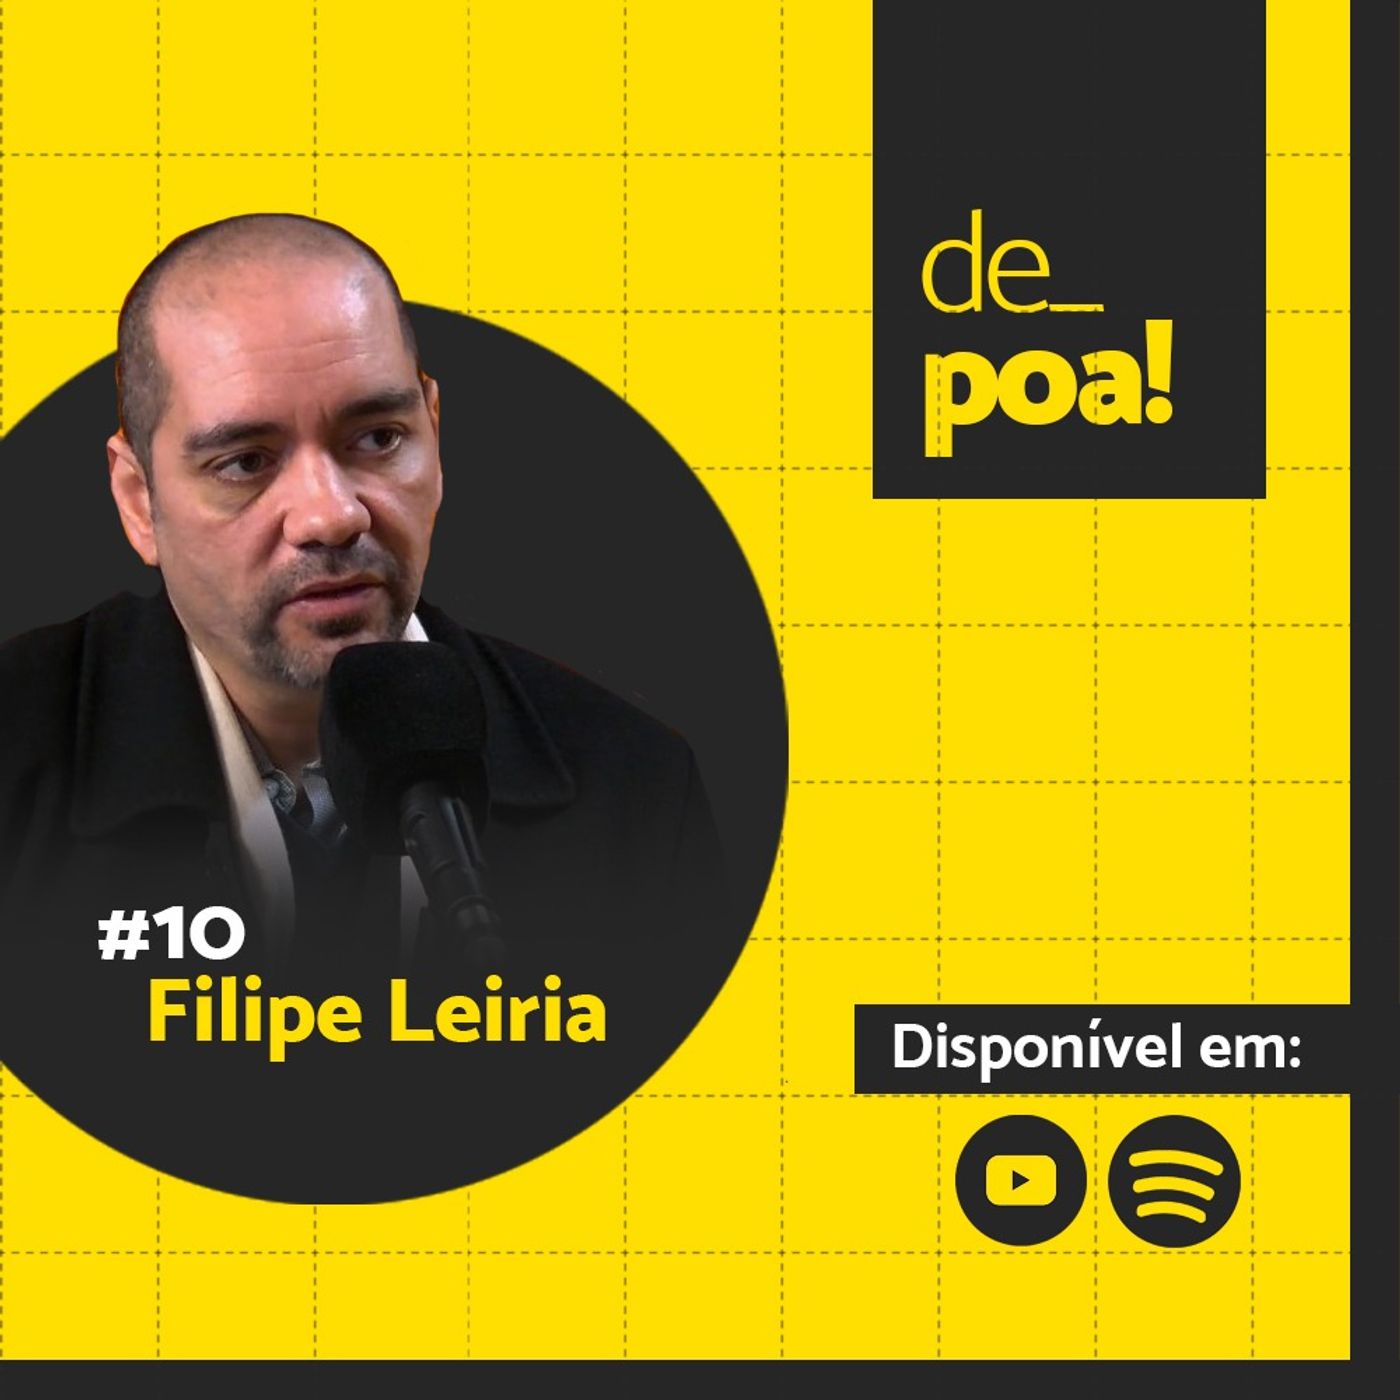 De Poa com Filipe Leiria